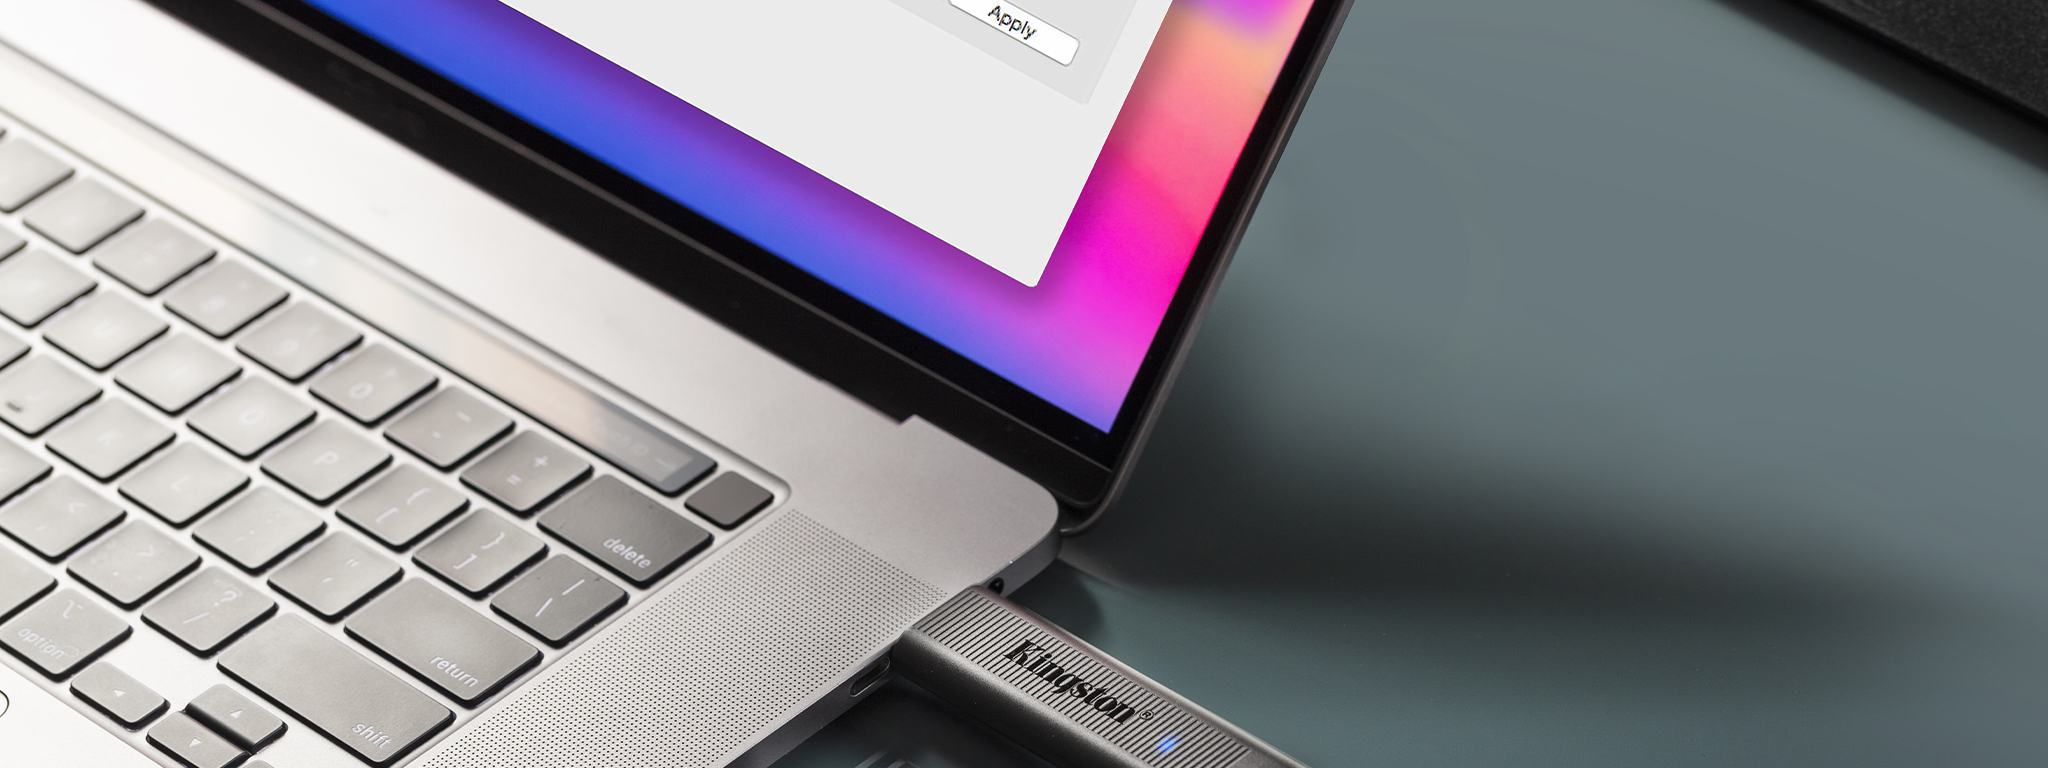 2. DataTraveler Max USB 드라이브 중, 한 개는 노트북에 연결되고 다른 한 개는 책상 위의 노트북 옆에 연결됩니다